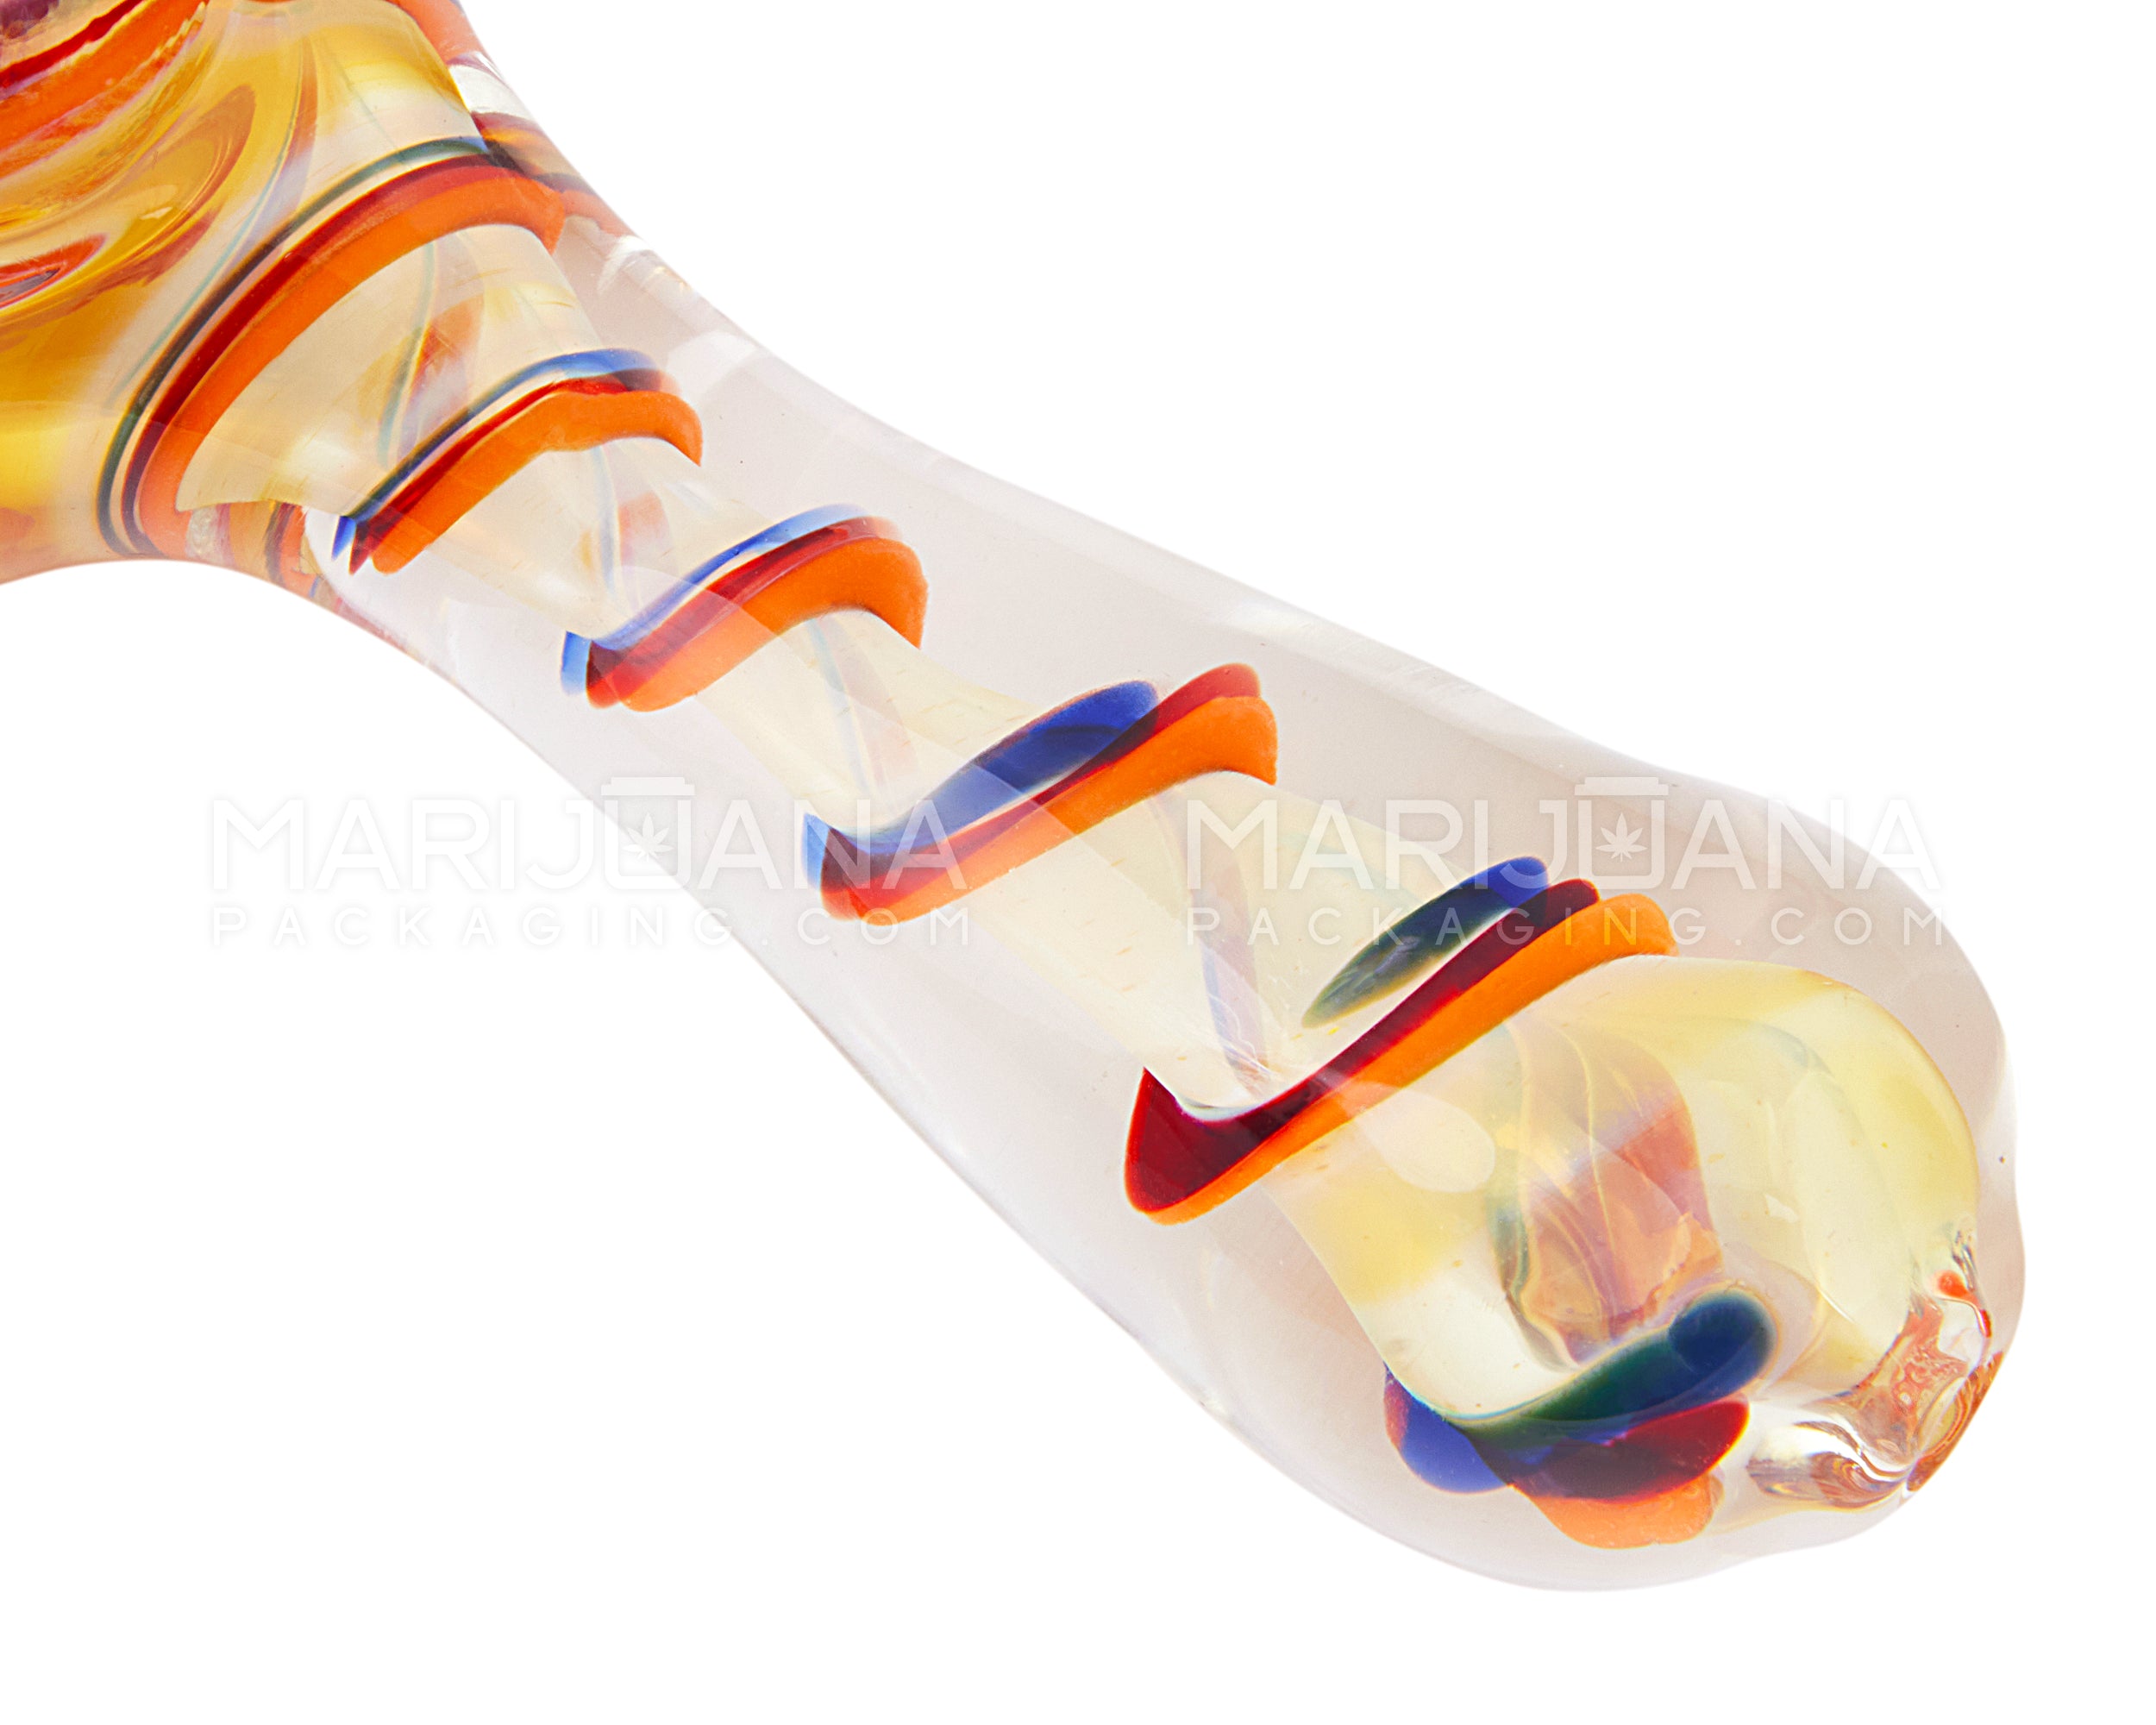 Frit & Fumed Swirl Spoon Hand Pipe w/ Triple Knockers | 4in Long - Glass - Assorted - 3